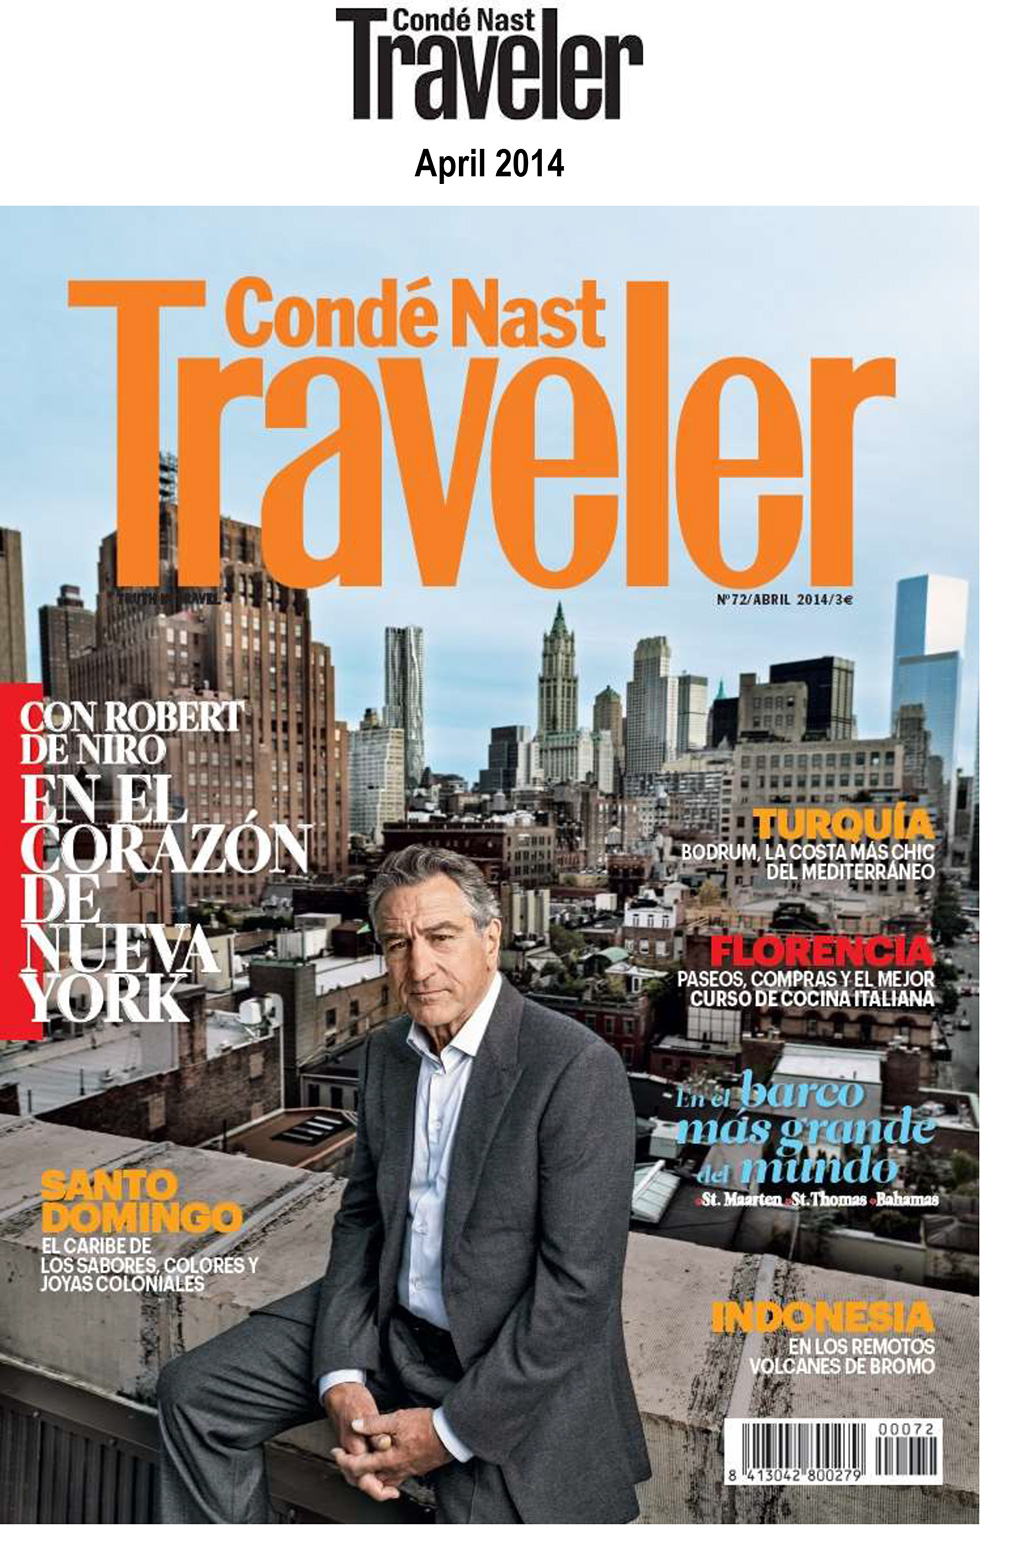 Condé Nast Traveler interviews Robert De Niro about The Greenwich Hotel